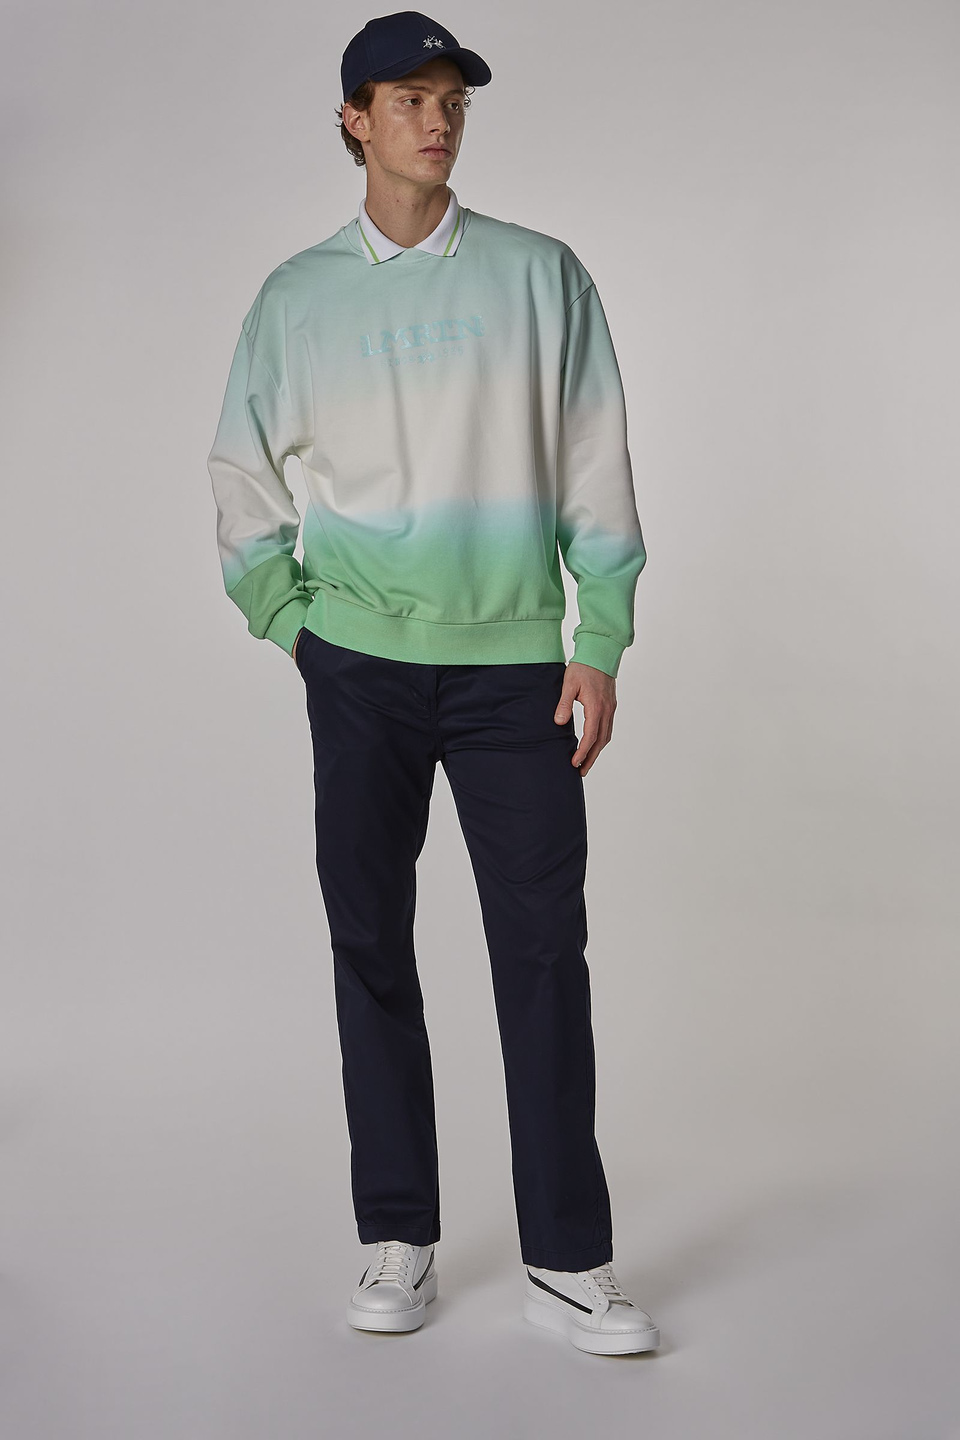 Men's oversized crew-neck sweatshirt in 100% cotton fabric - La Martina - Official Online Shop